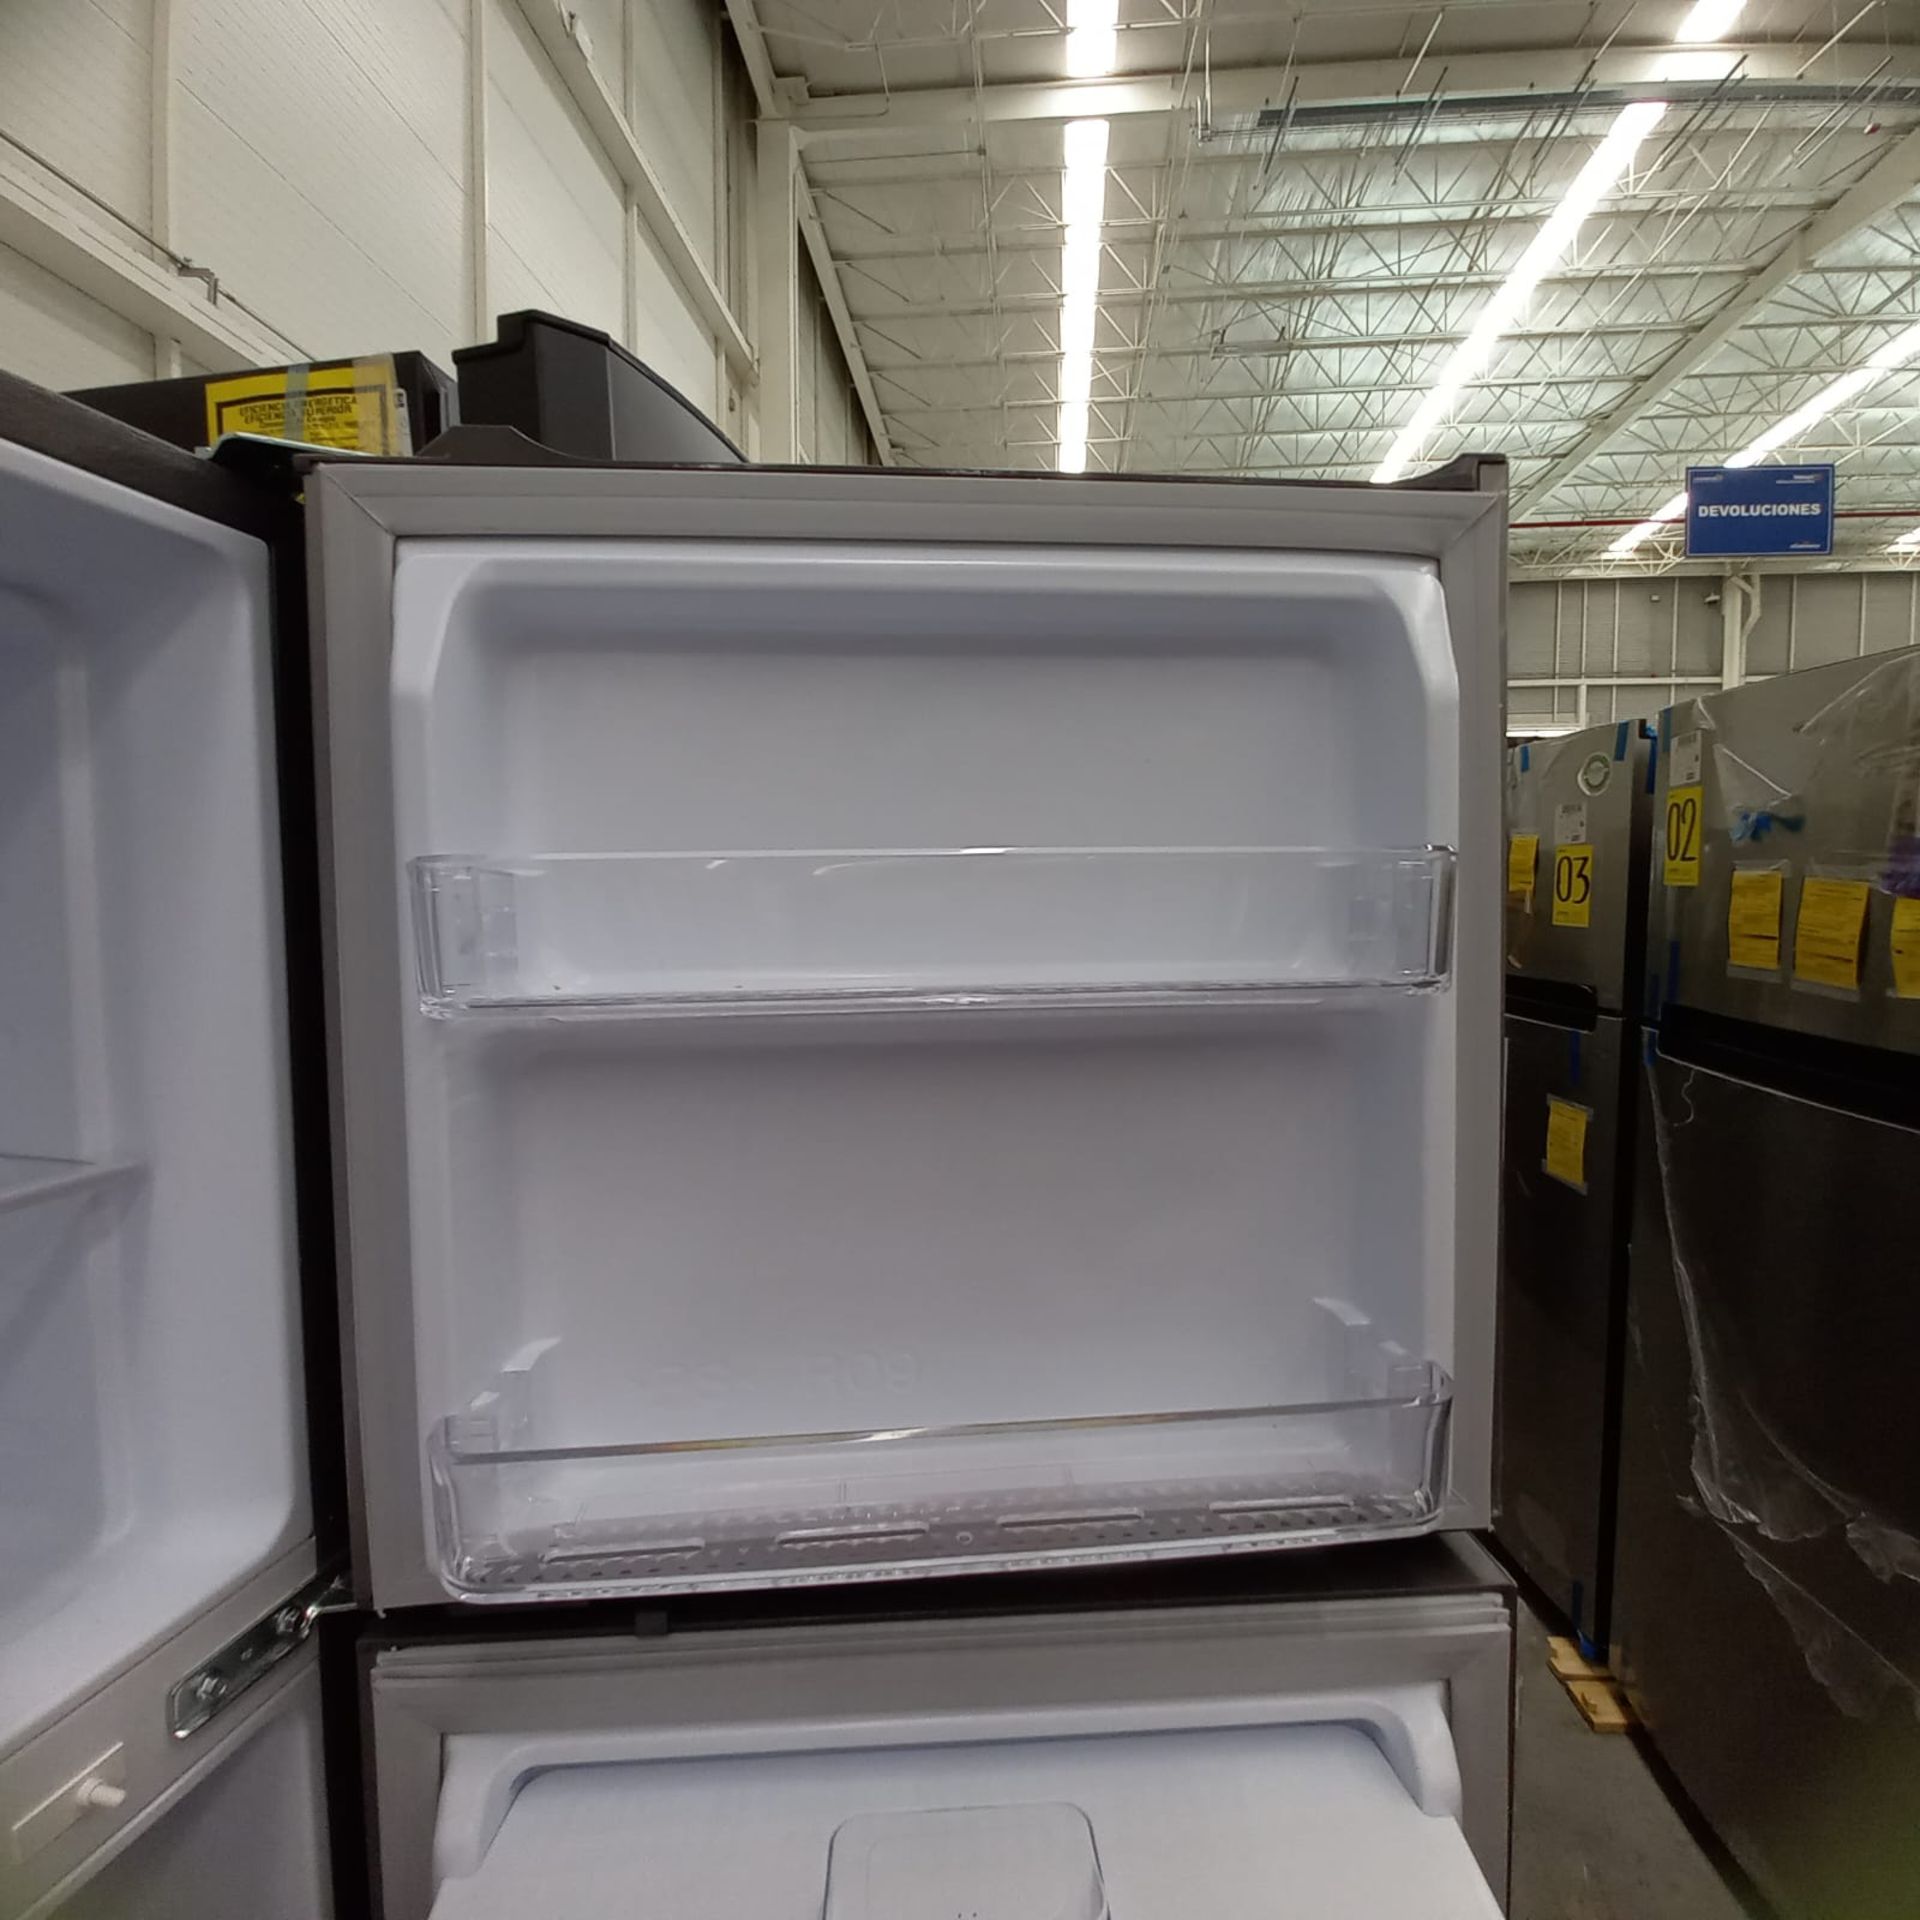 Lote De 2 Refrigeradores: 1 Refrigerador Marca Mabe, 1 Refrigerador Marca Winia, Distintos Modelos - Image 19 of 23